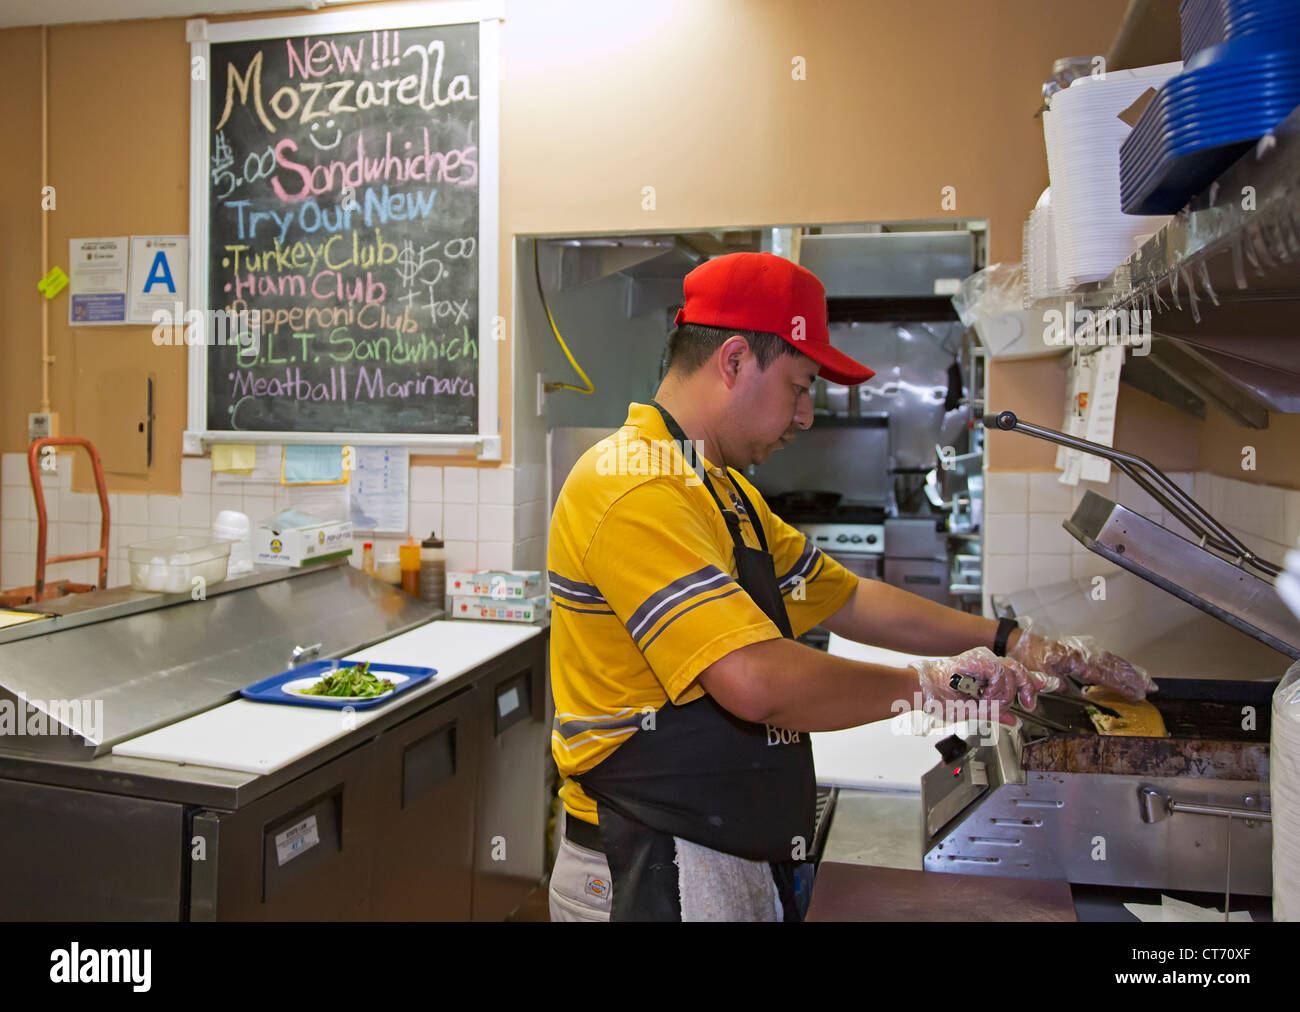 Los Angeles, Californie - un travailleur fait un sandwich à un fast food shop à Los Angeles' fashion district. Banque D'Images